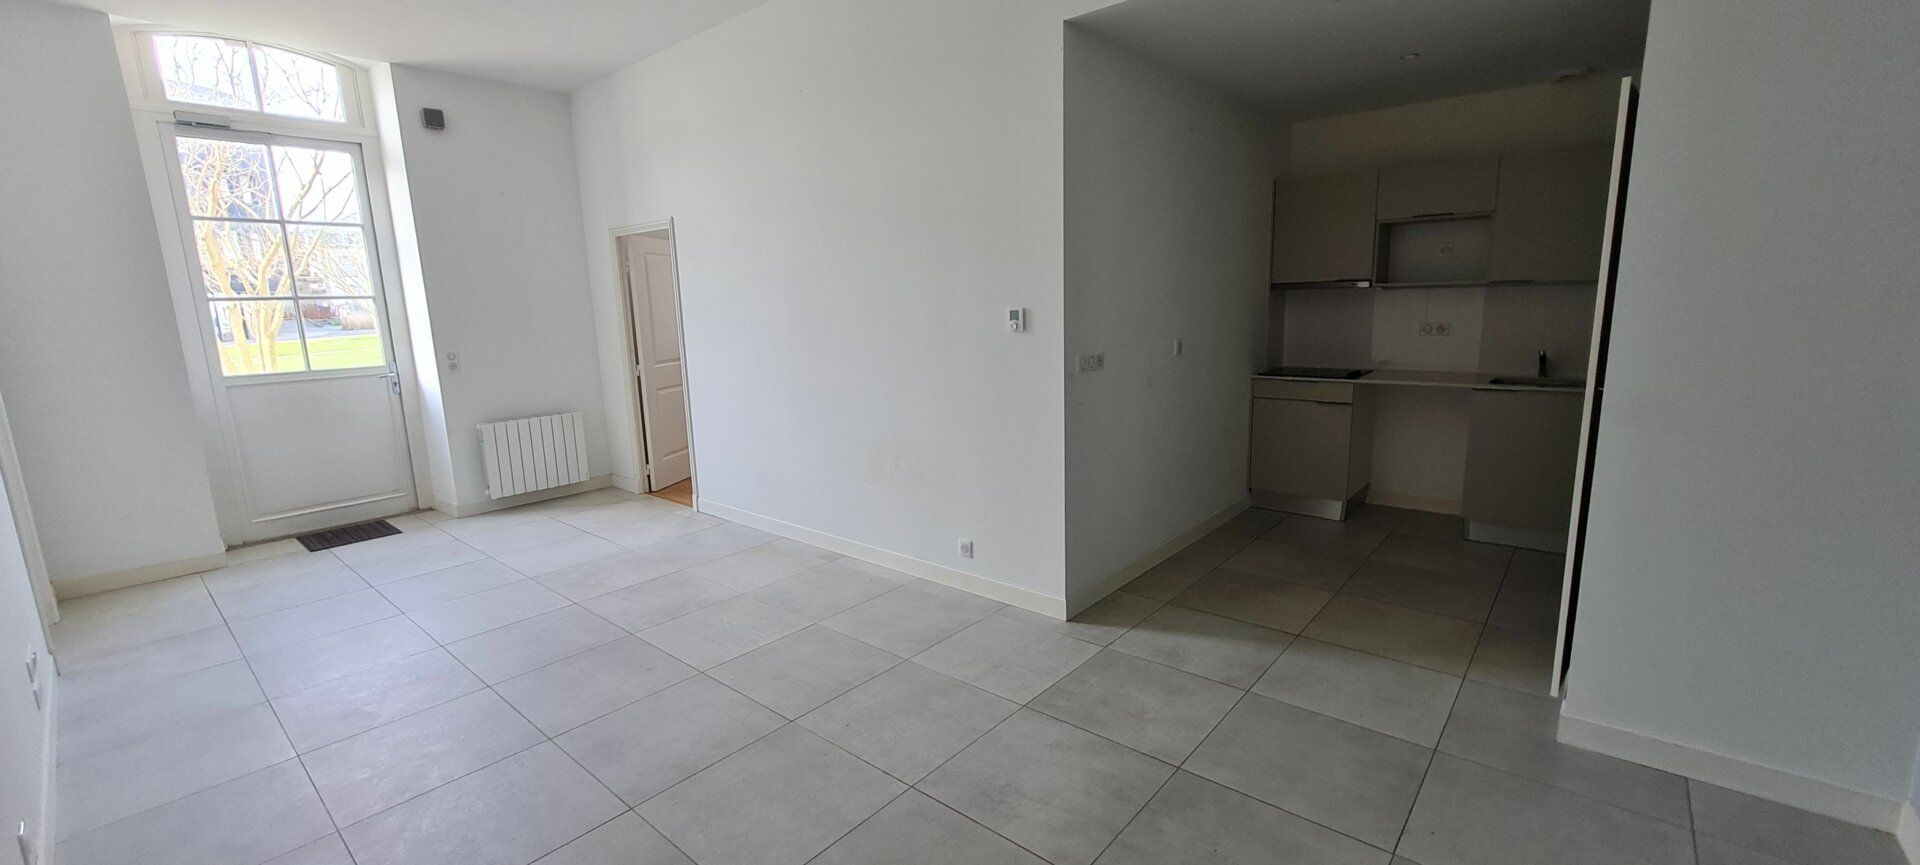 Appartement à louer 3 61.3m2 à Saint-Brieuc vignette-3